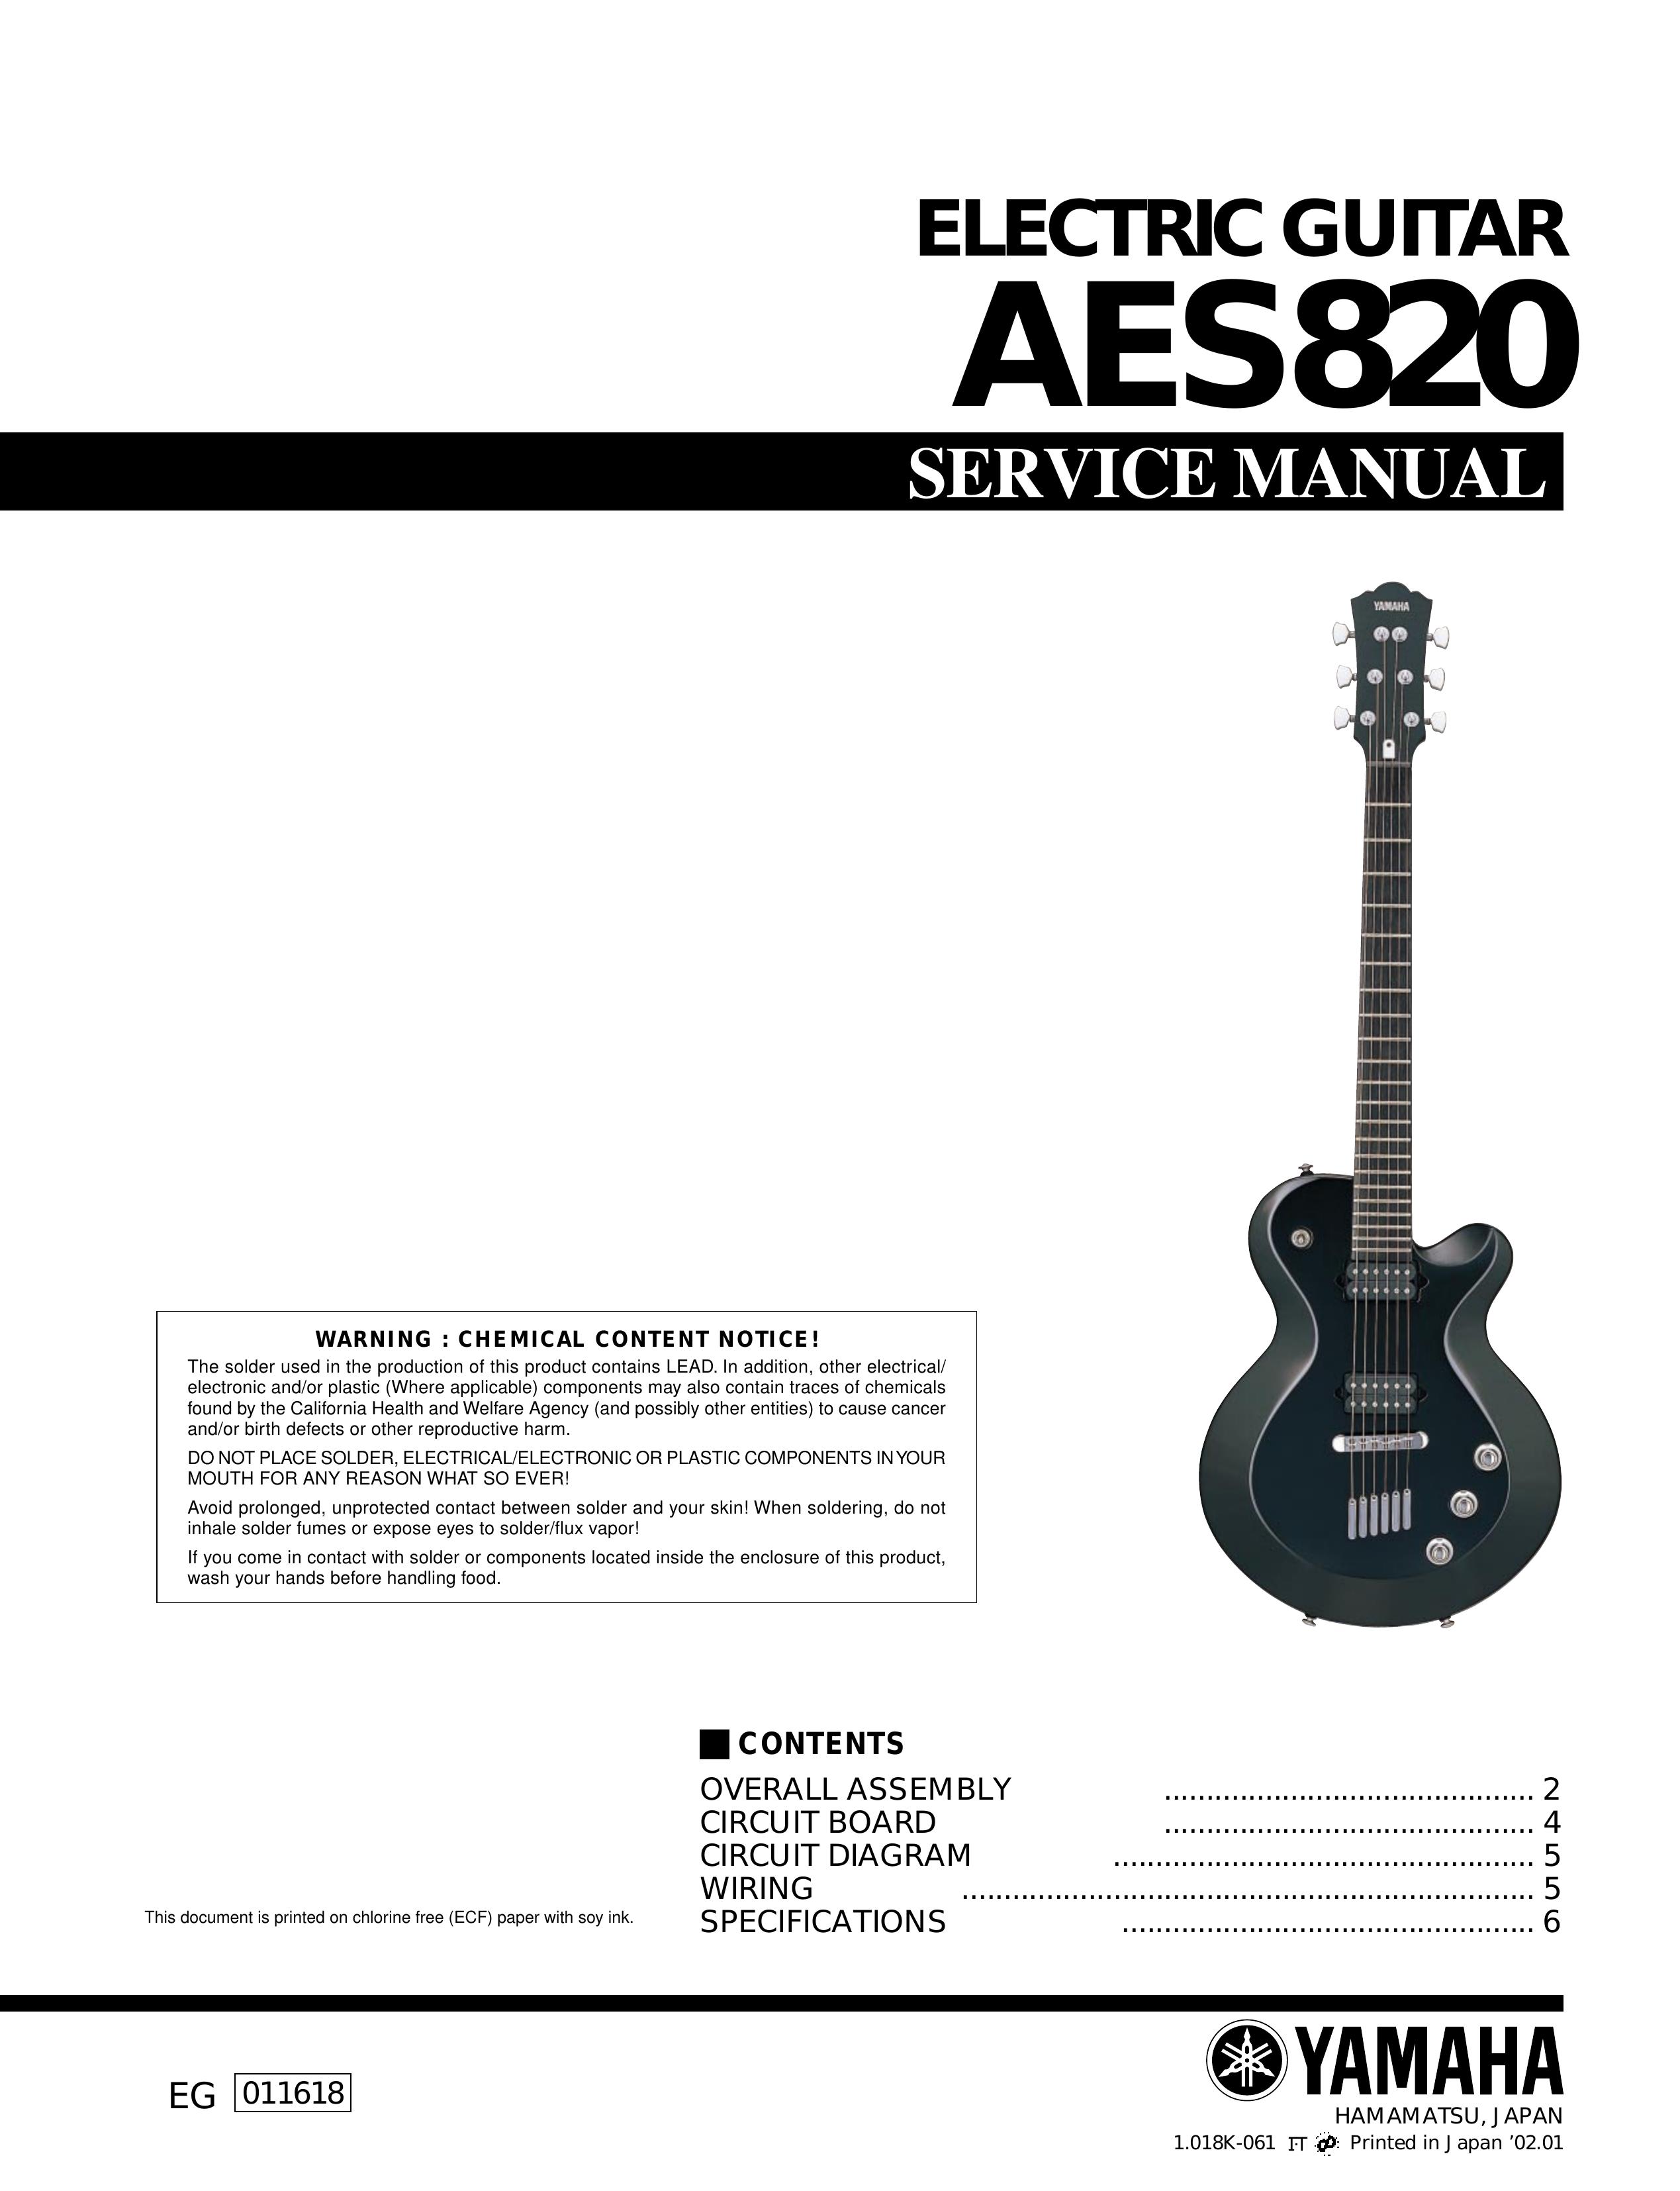 Yamaha AES820 Guitar User Manual